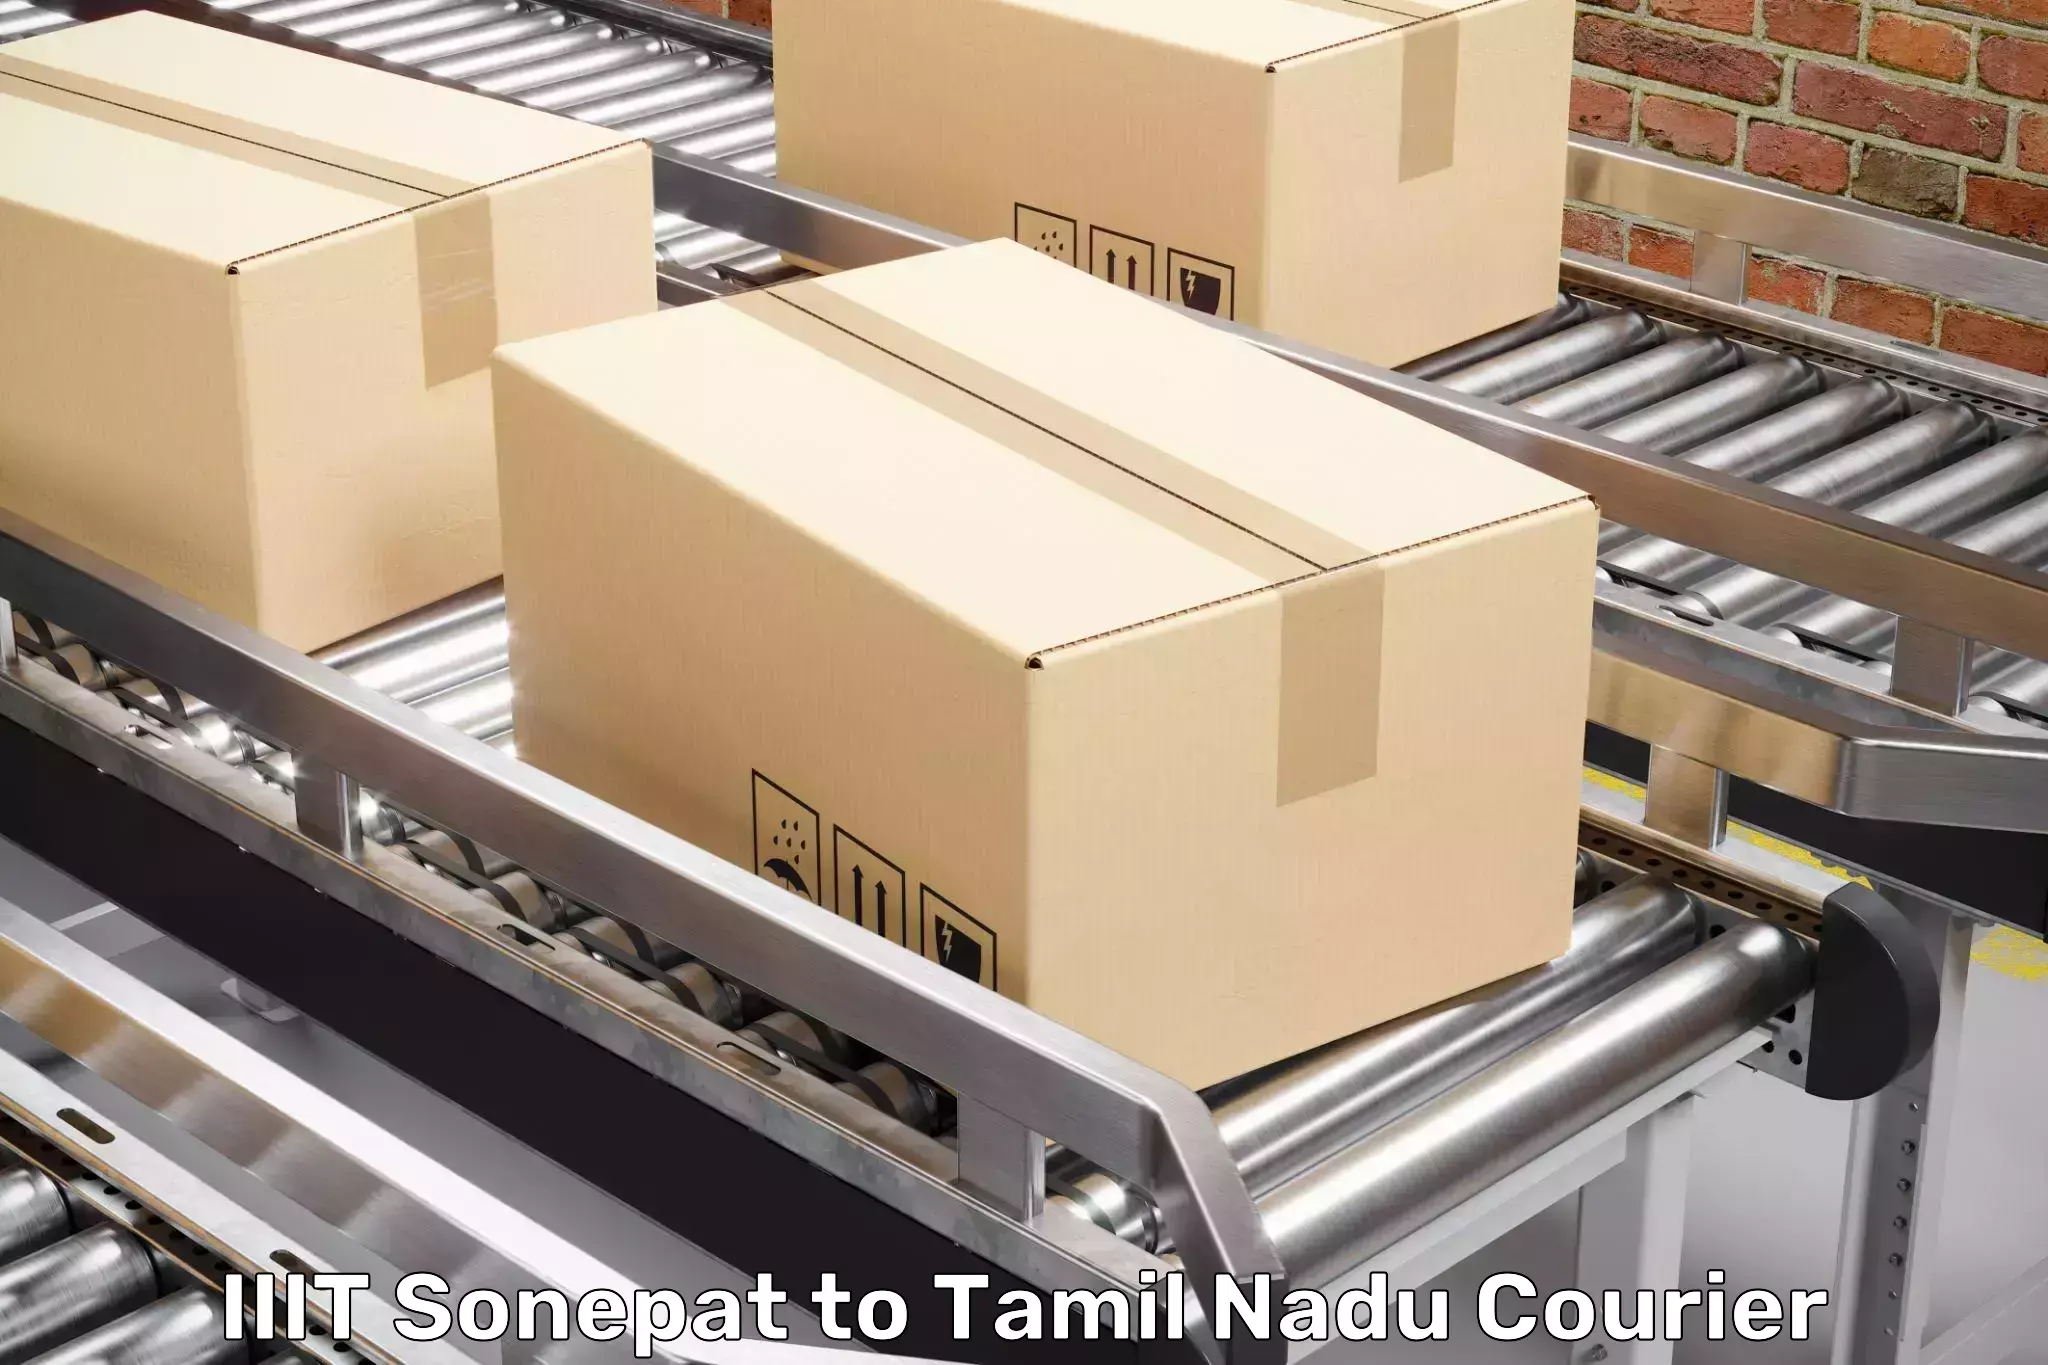 Budget-friendly movers IIIT Sonepat to Tamil Nadu